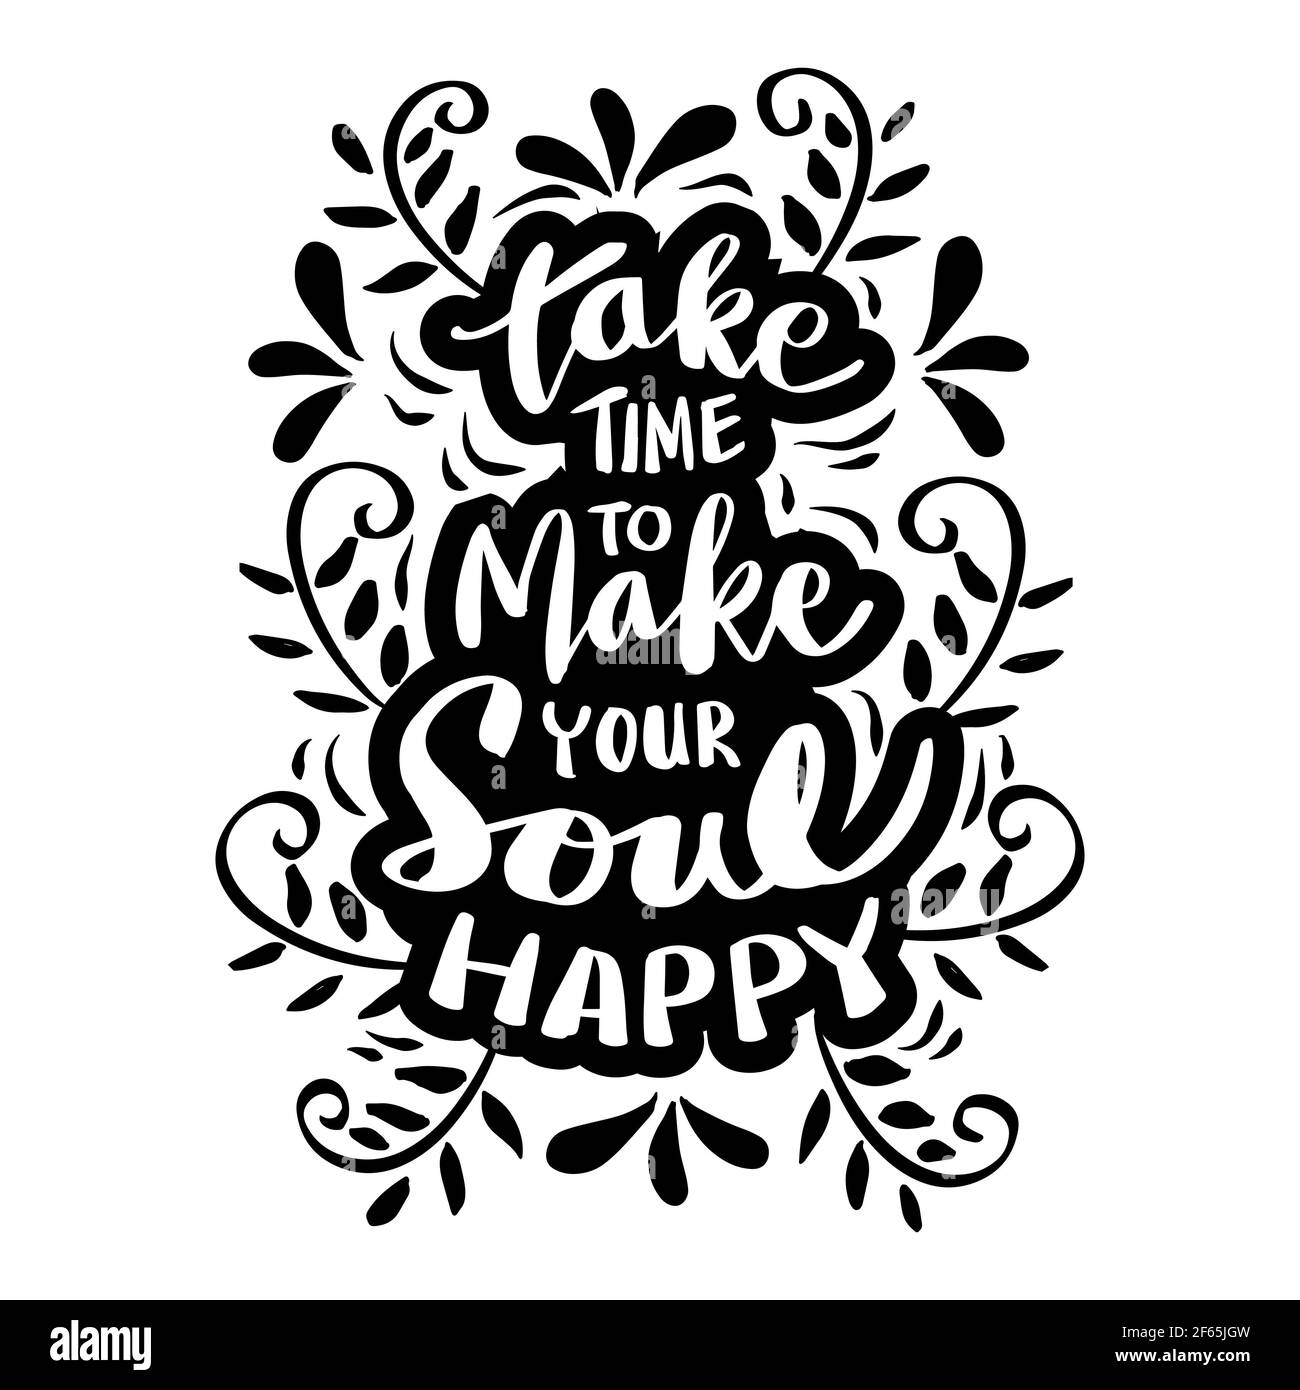 Prendetevi del tempo per rendere la vostra anima felice. Citazione motivazionale. Foto Stock